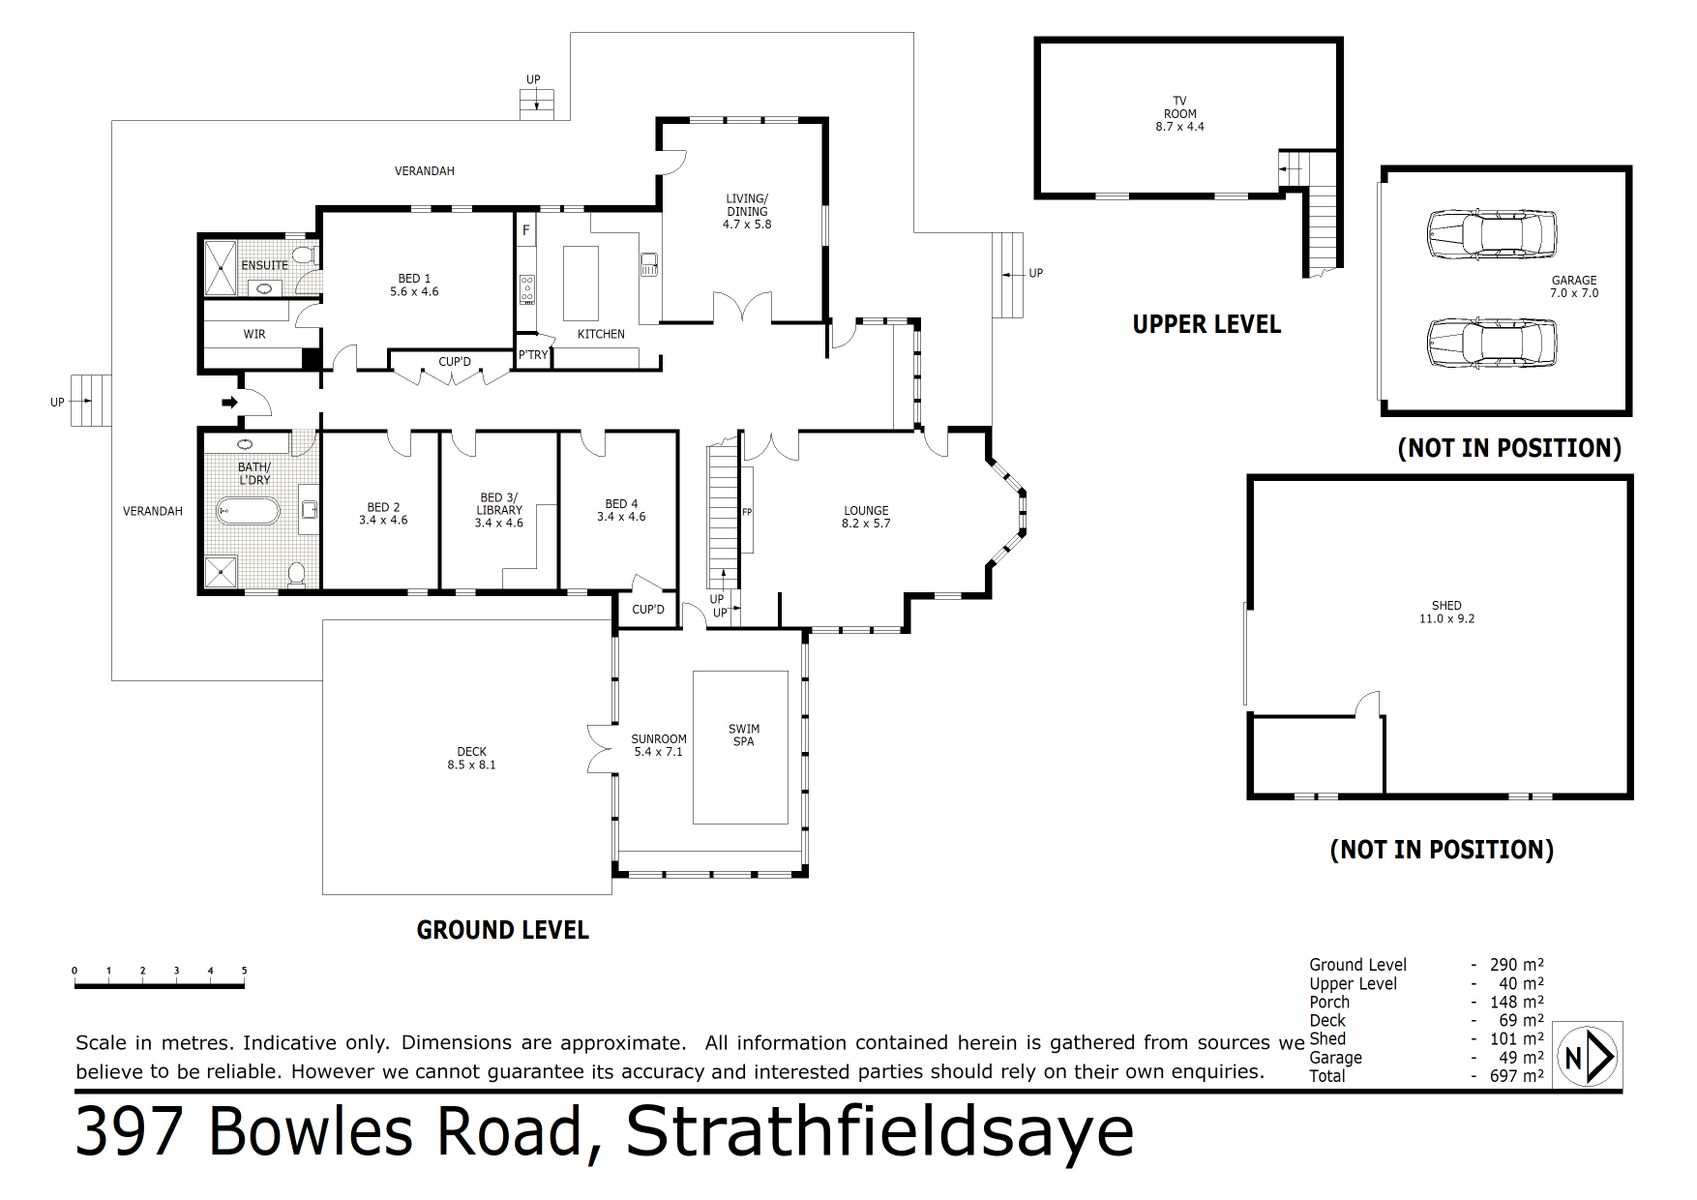 397 Bowles Road Strathfieldsaye (12 FEB 2021) 330sqm